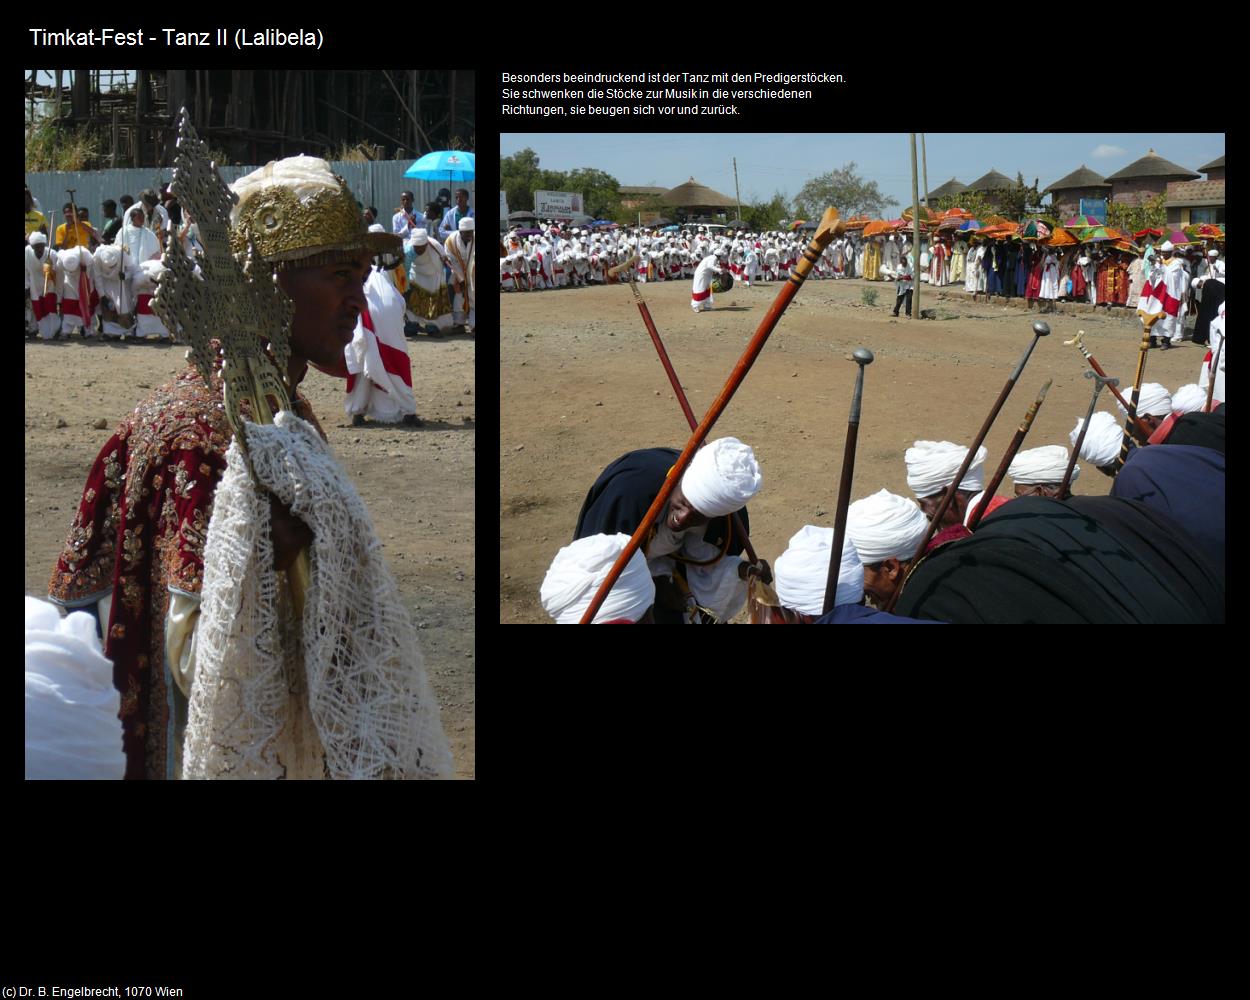 Tanz II (Timkat-Fest) in Äthiopien